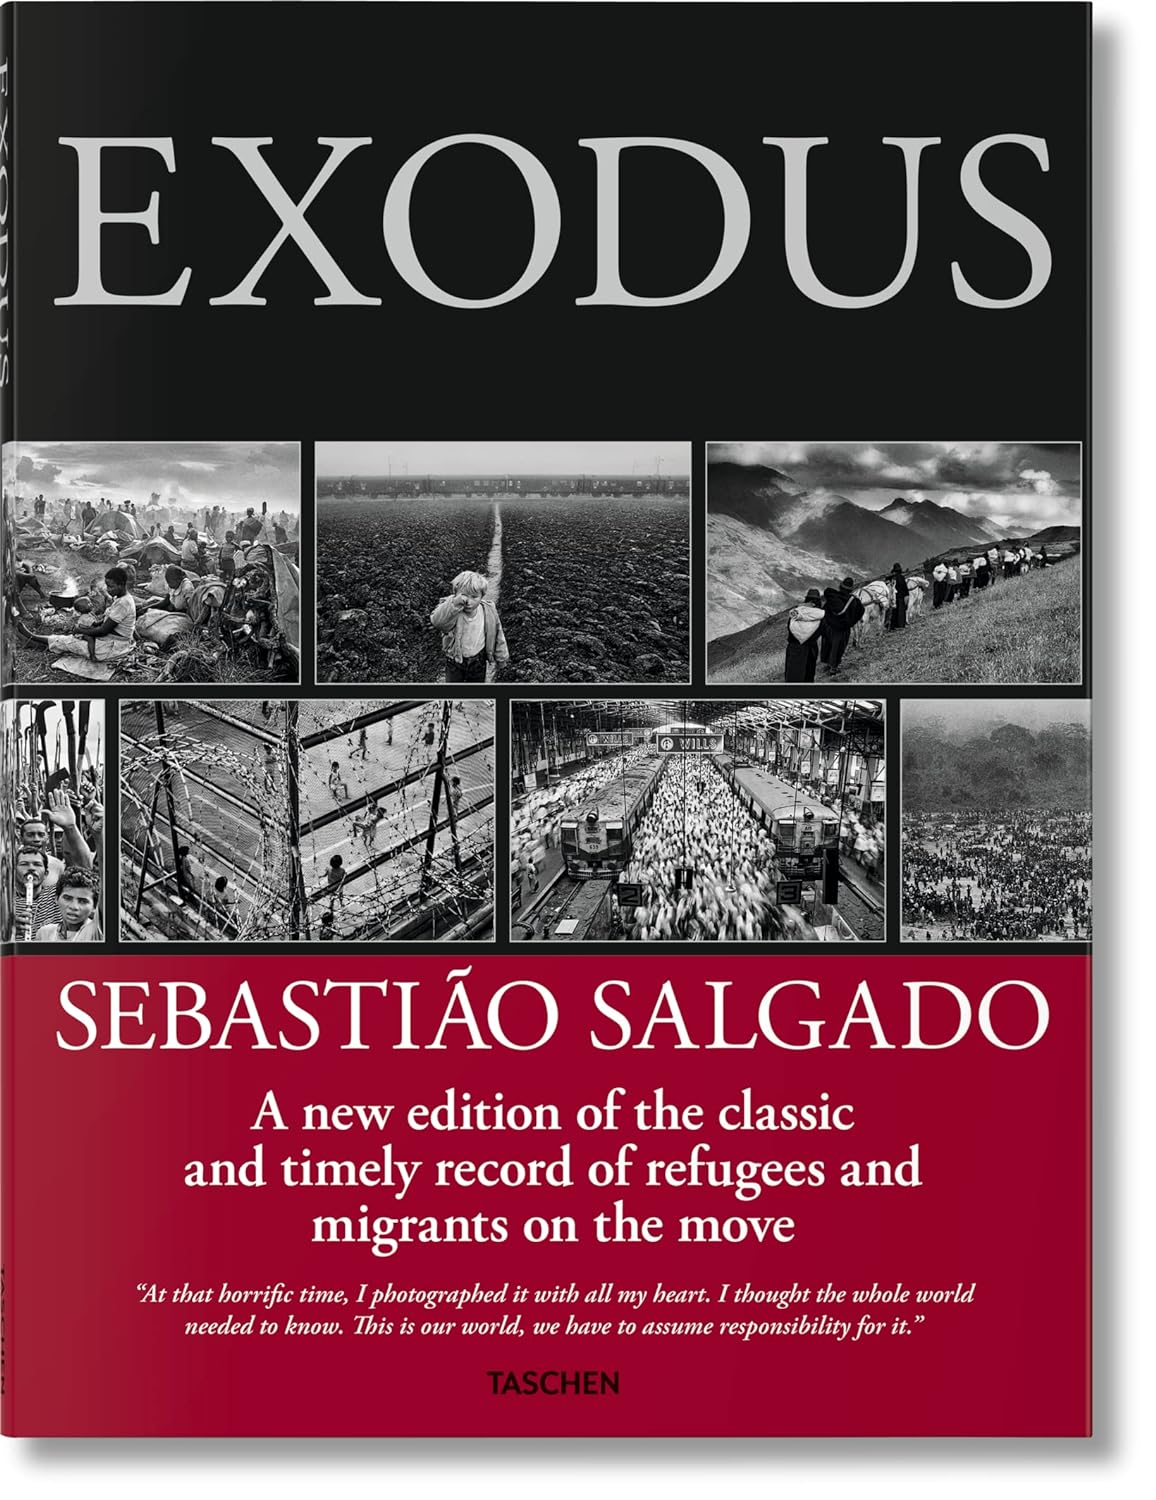 Sebastiao Salgado: Exodus